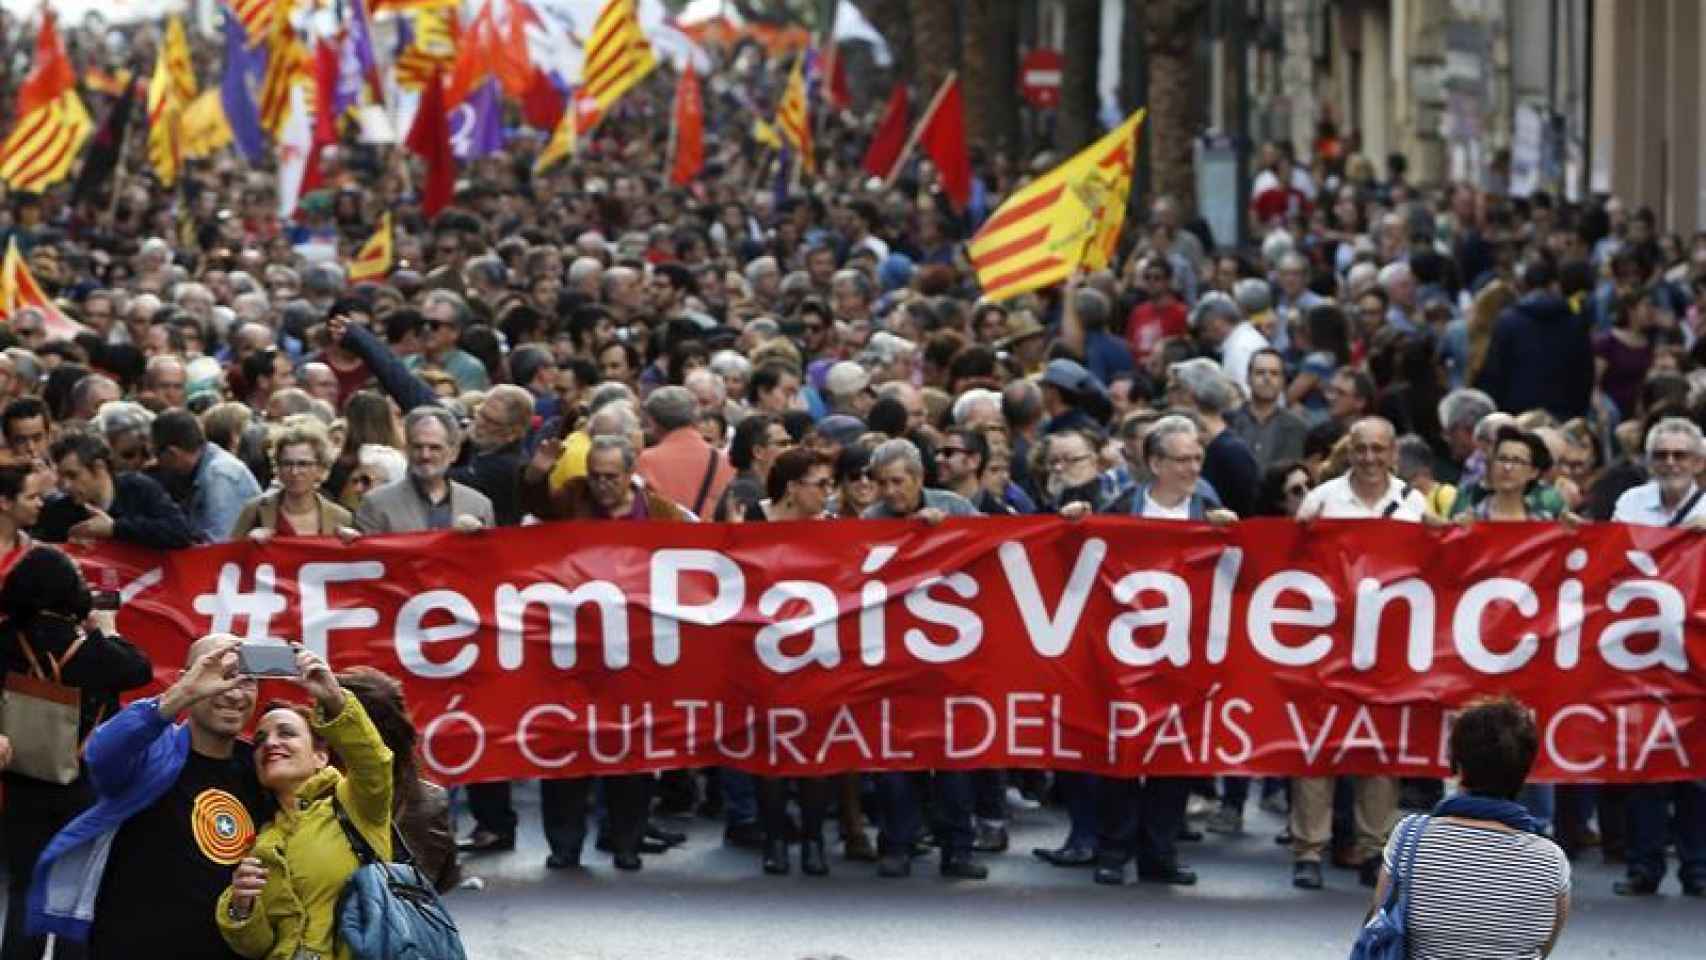 Cabecera de la manifestación con motivo del 25 d'Abril bajo el lema Fem País Valencia.